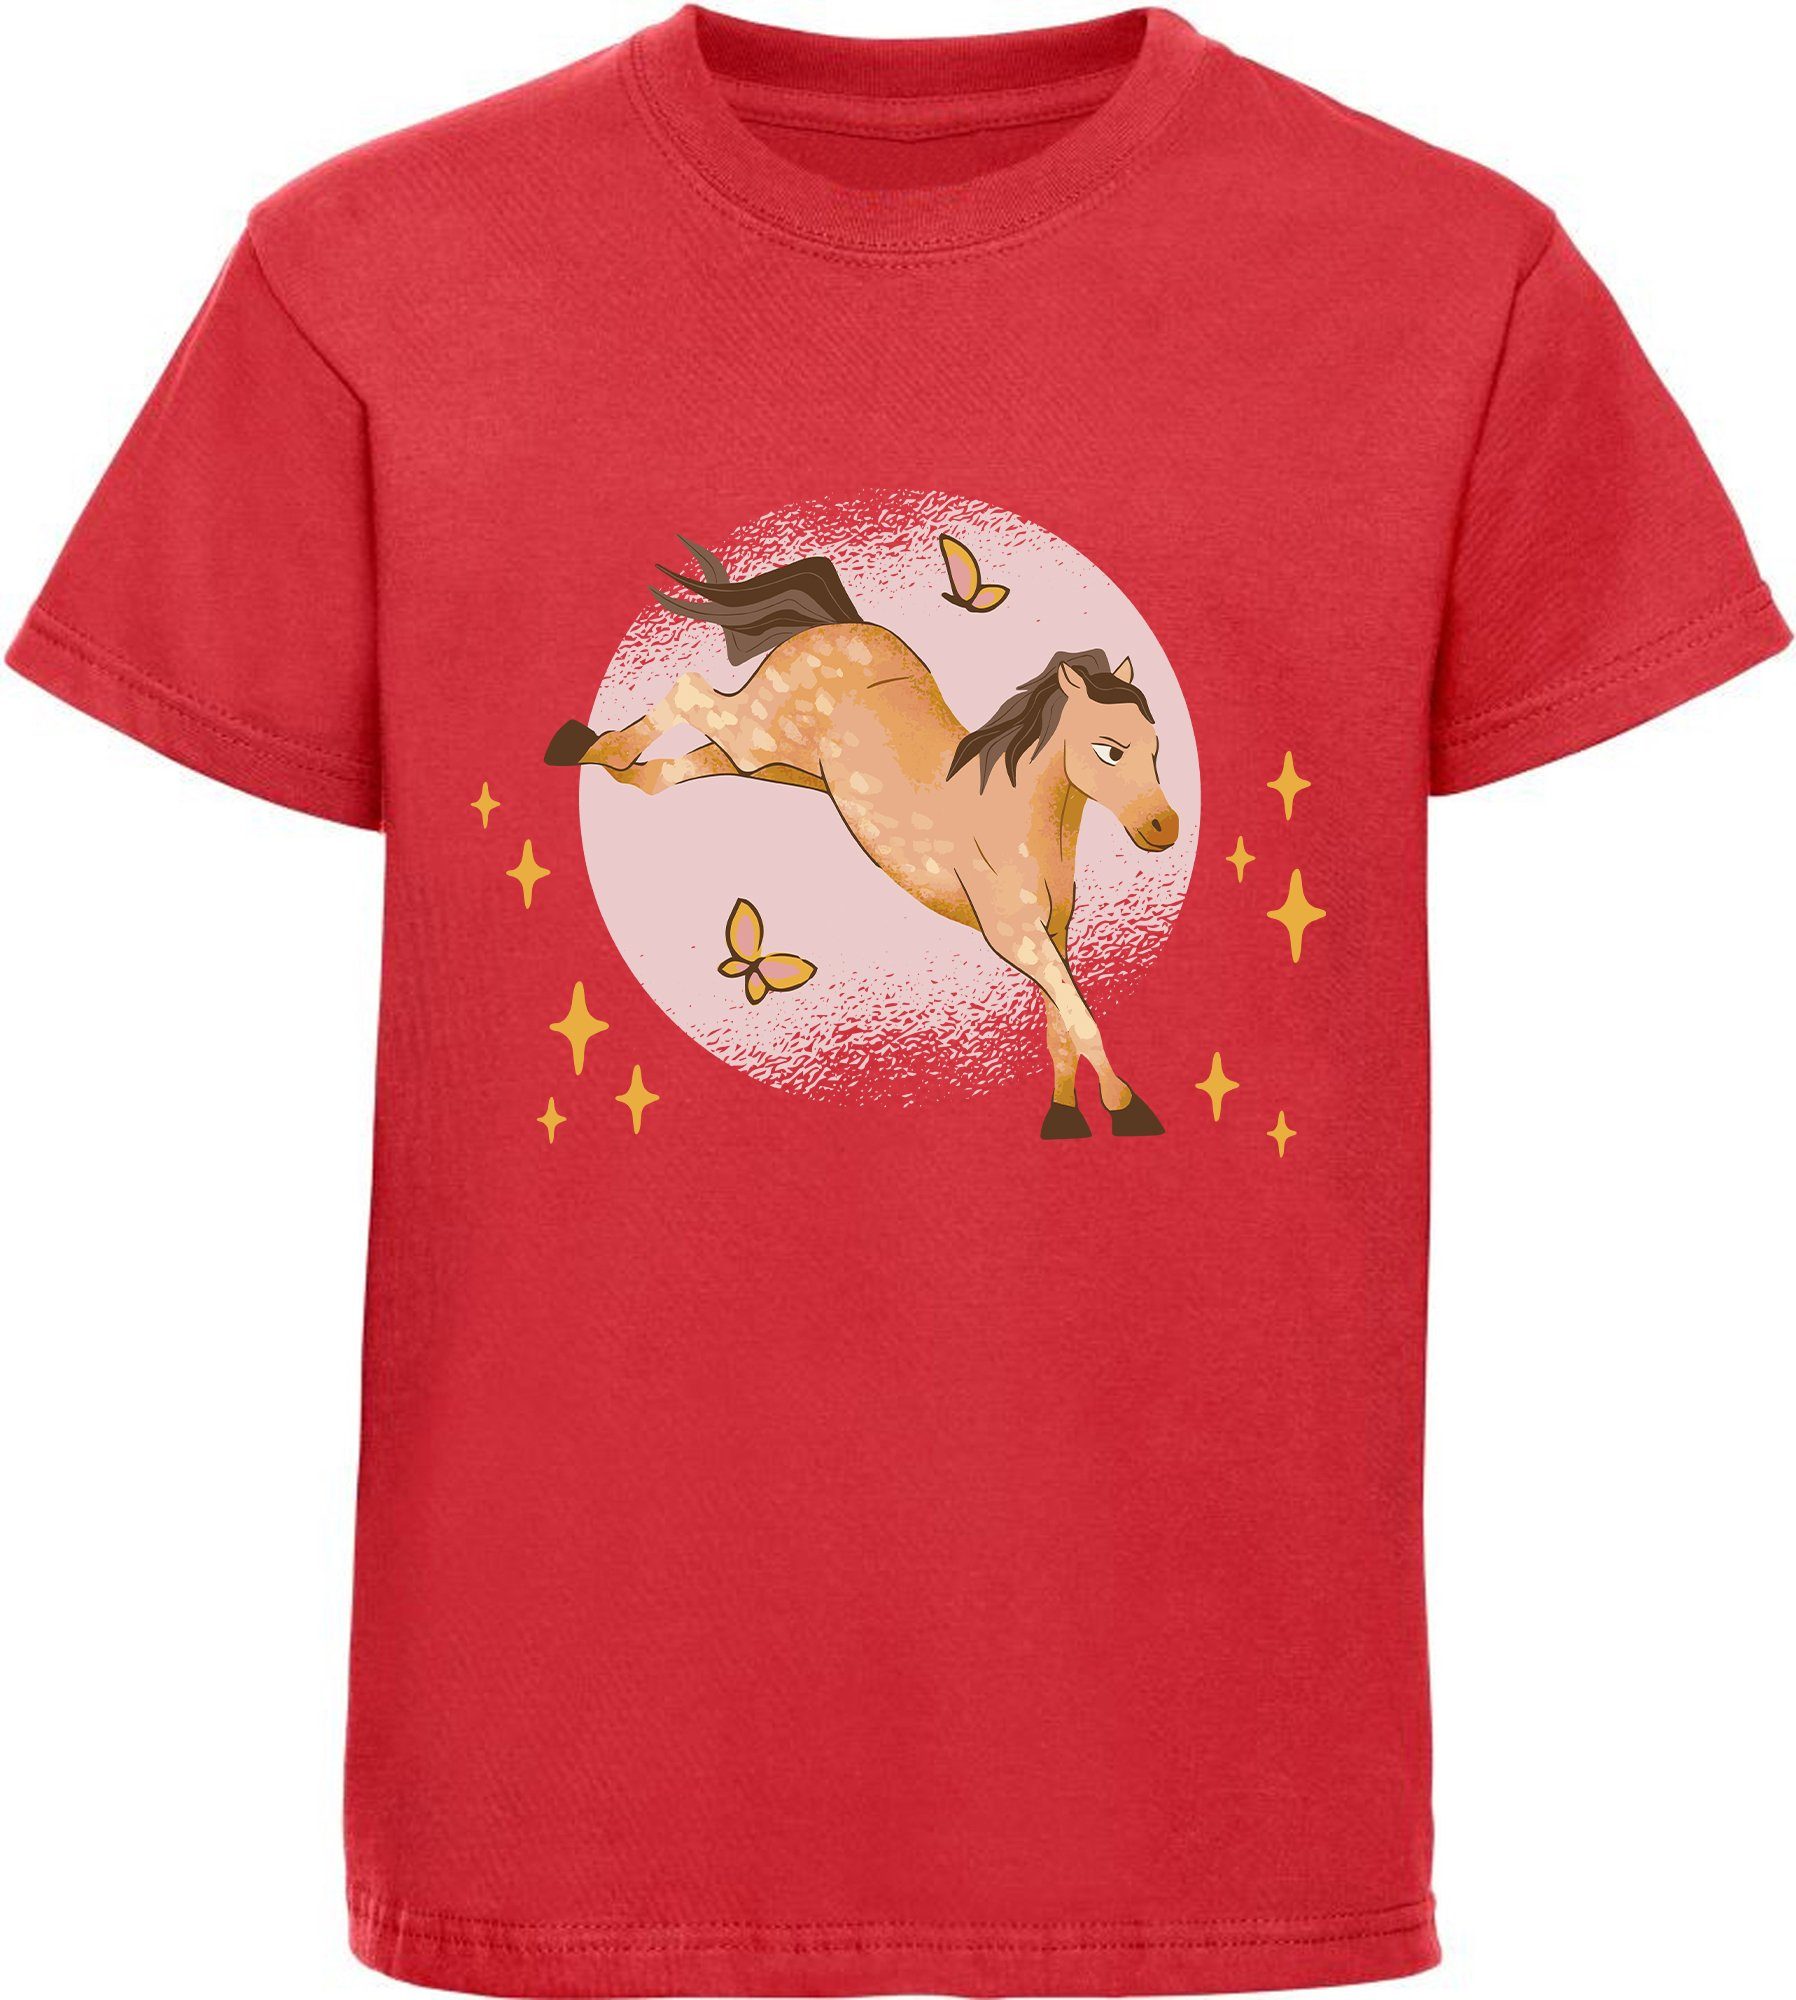 MyDesign24 Print-Shirt bedrucktes Mädchen T-Shirt austretendes Pferd und Schmetterlinge Baumwollshirt mit Aufdruck, i157 rot